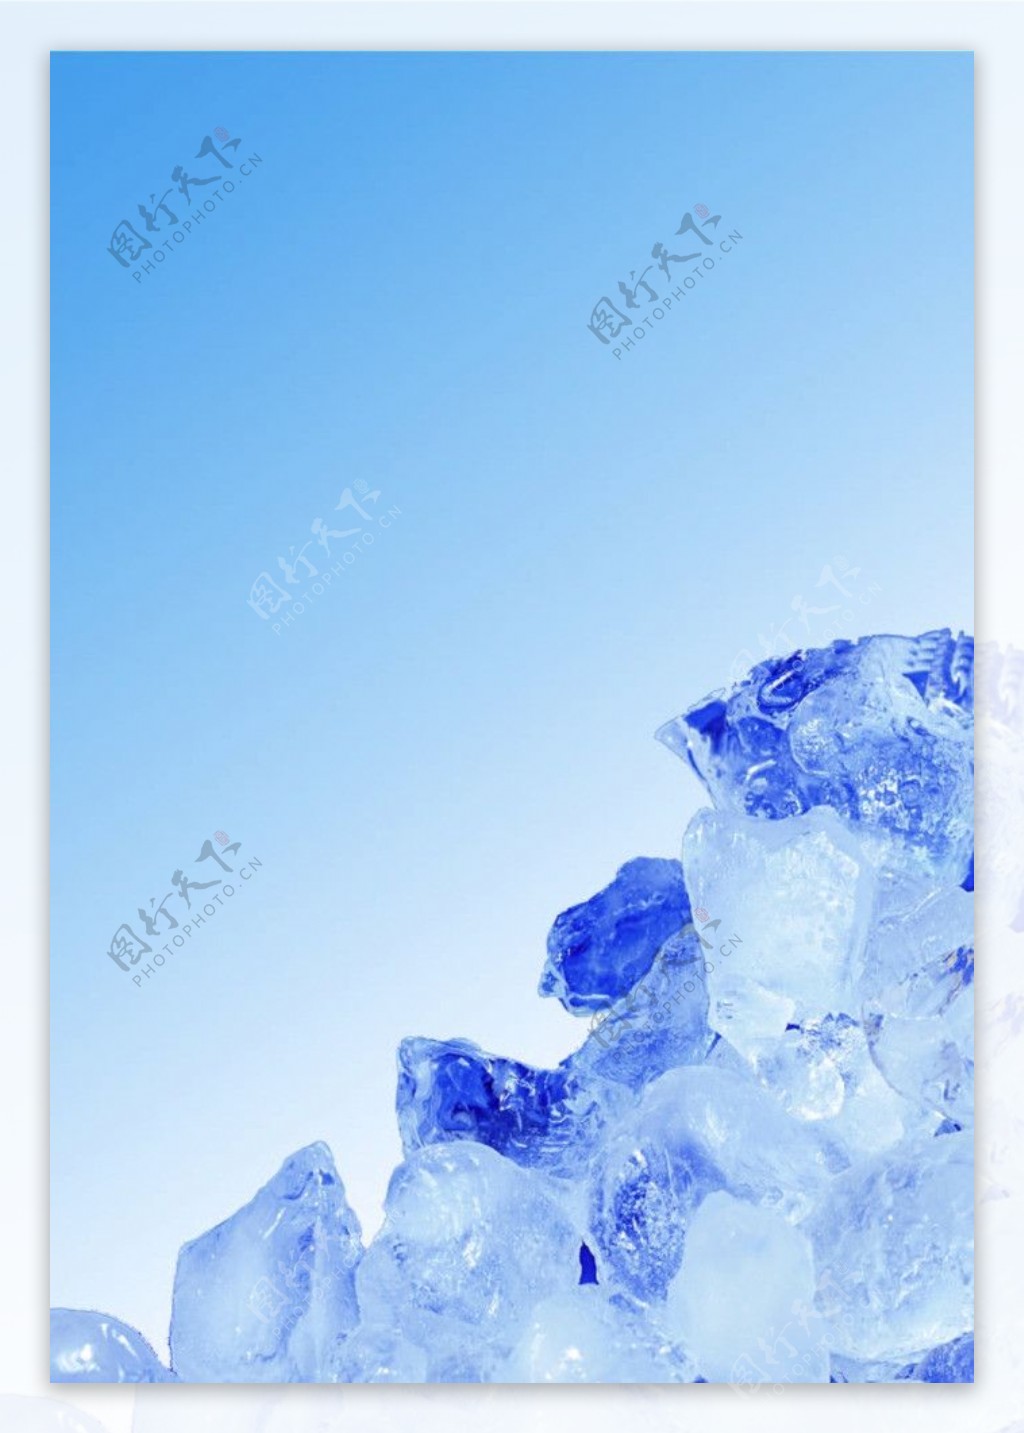 冰块矿泉水清凉图片